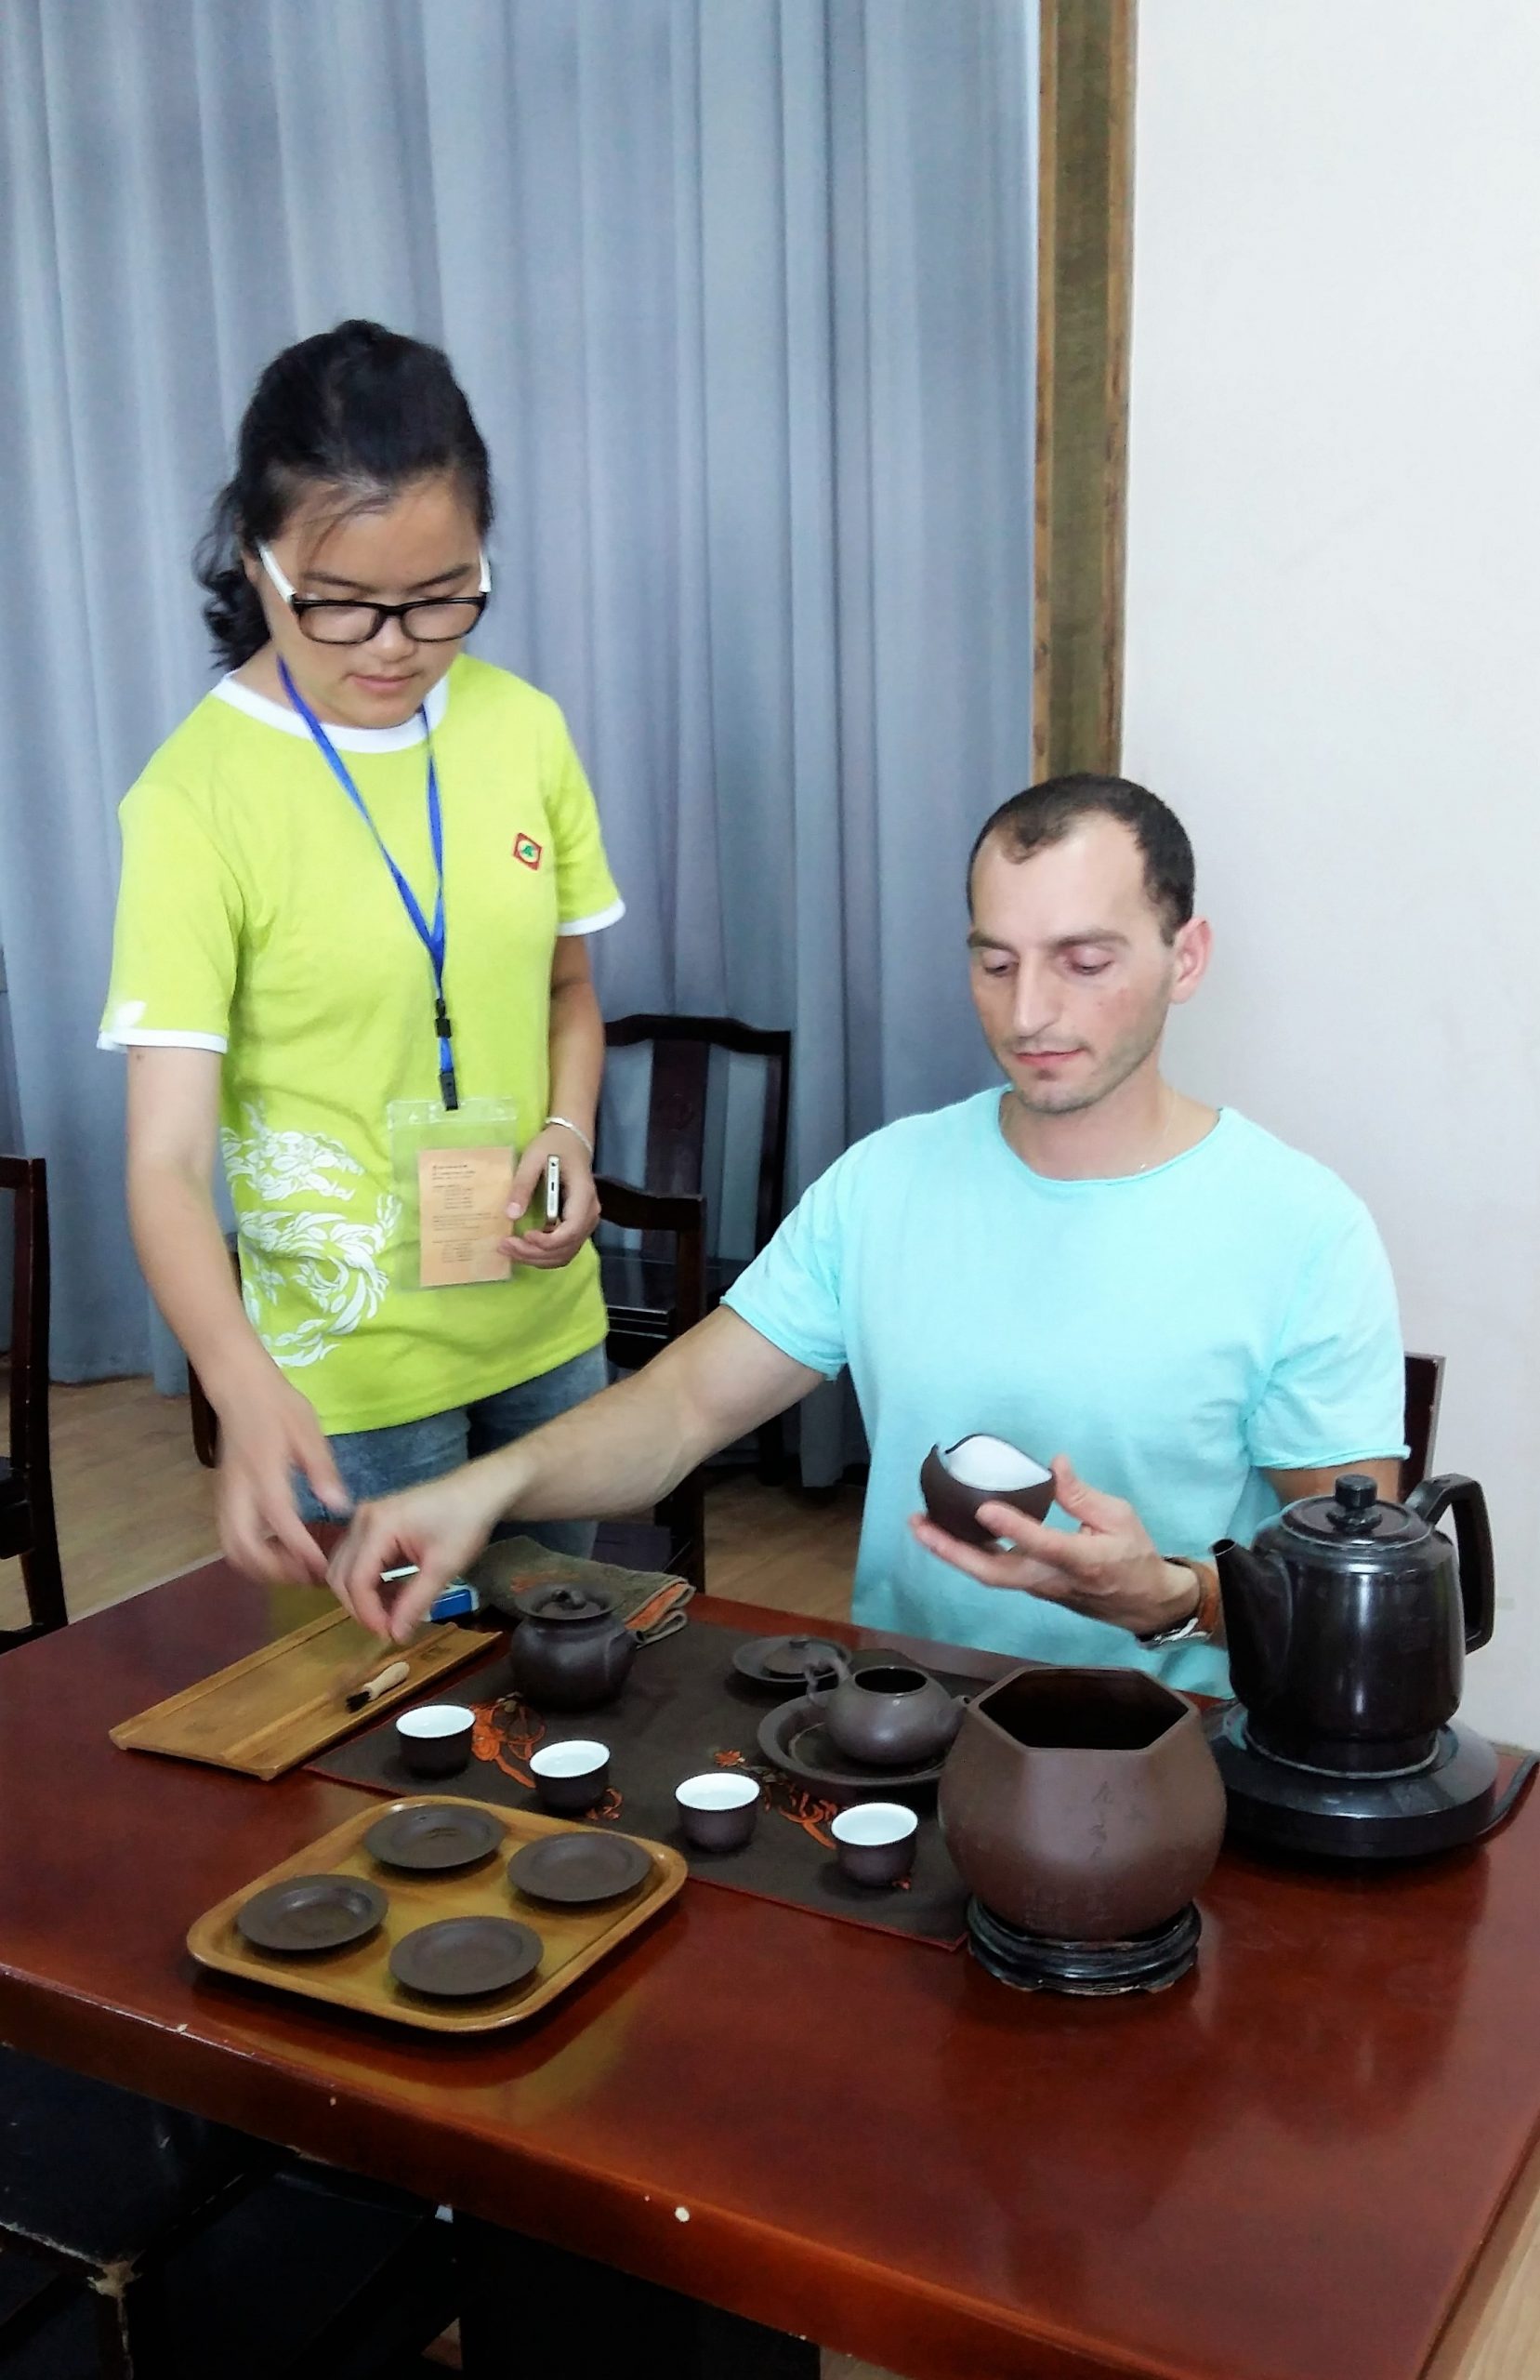 ქართულ-ჩინური ჩაის ცენტრი (Georgian-Chinese Tea Center)